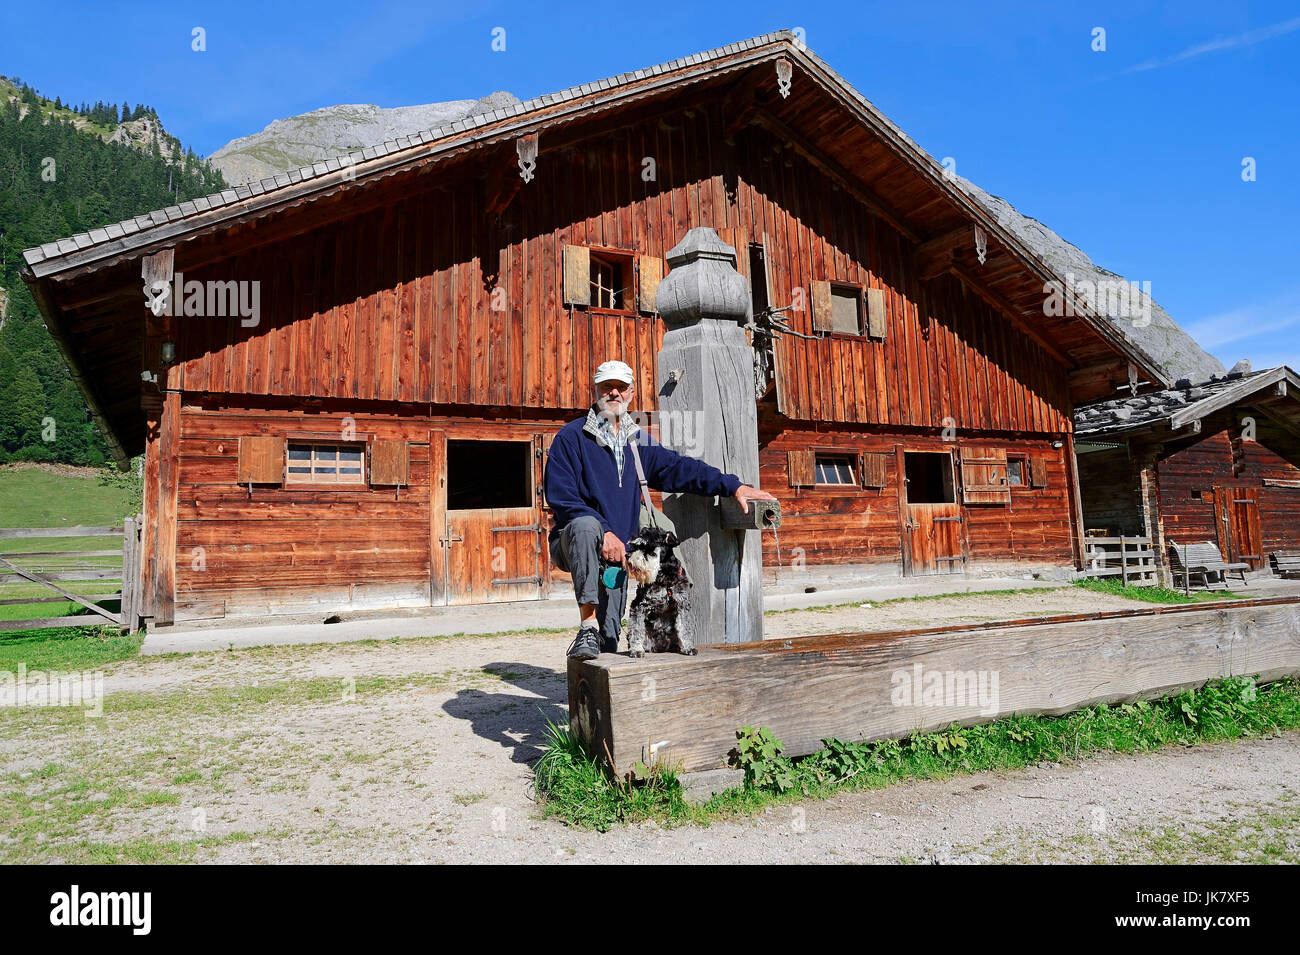 Mann mit Zwergschnauzer, Schwarz-Silber, am Holz Brunnen und Hütte, Grosser Ahornboden, Karwendel parken, Eng-Tal, Tirol, Österreich Stockfoto